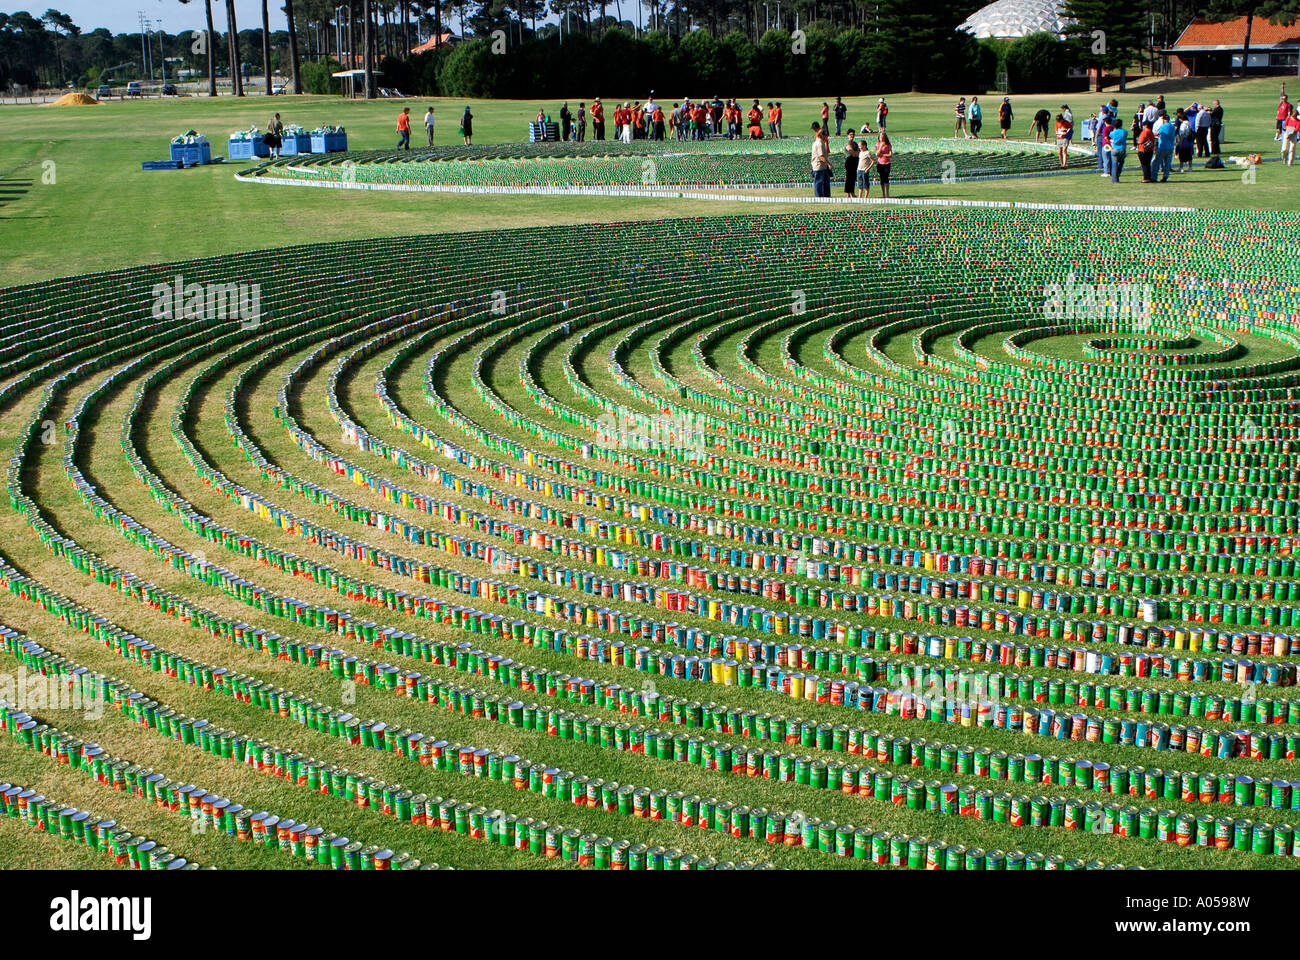 Oltre 69.000 lattine di fagioli disposti in un record del mondo in linea continua. Perth, Western Australia Foto Stock